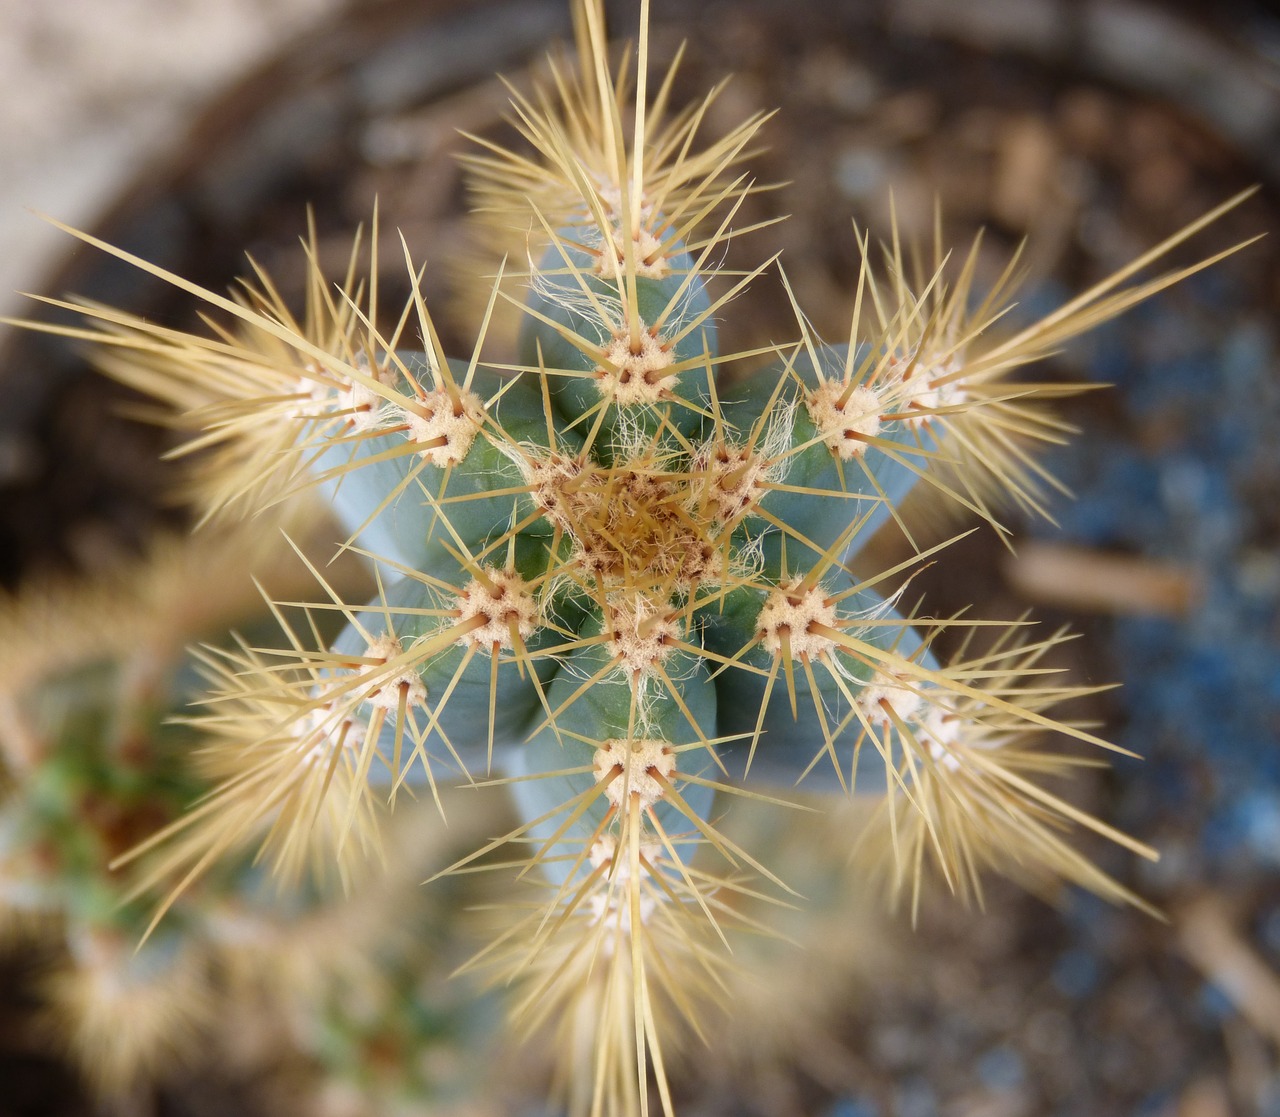 cactus thorns skewers free photo